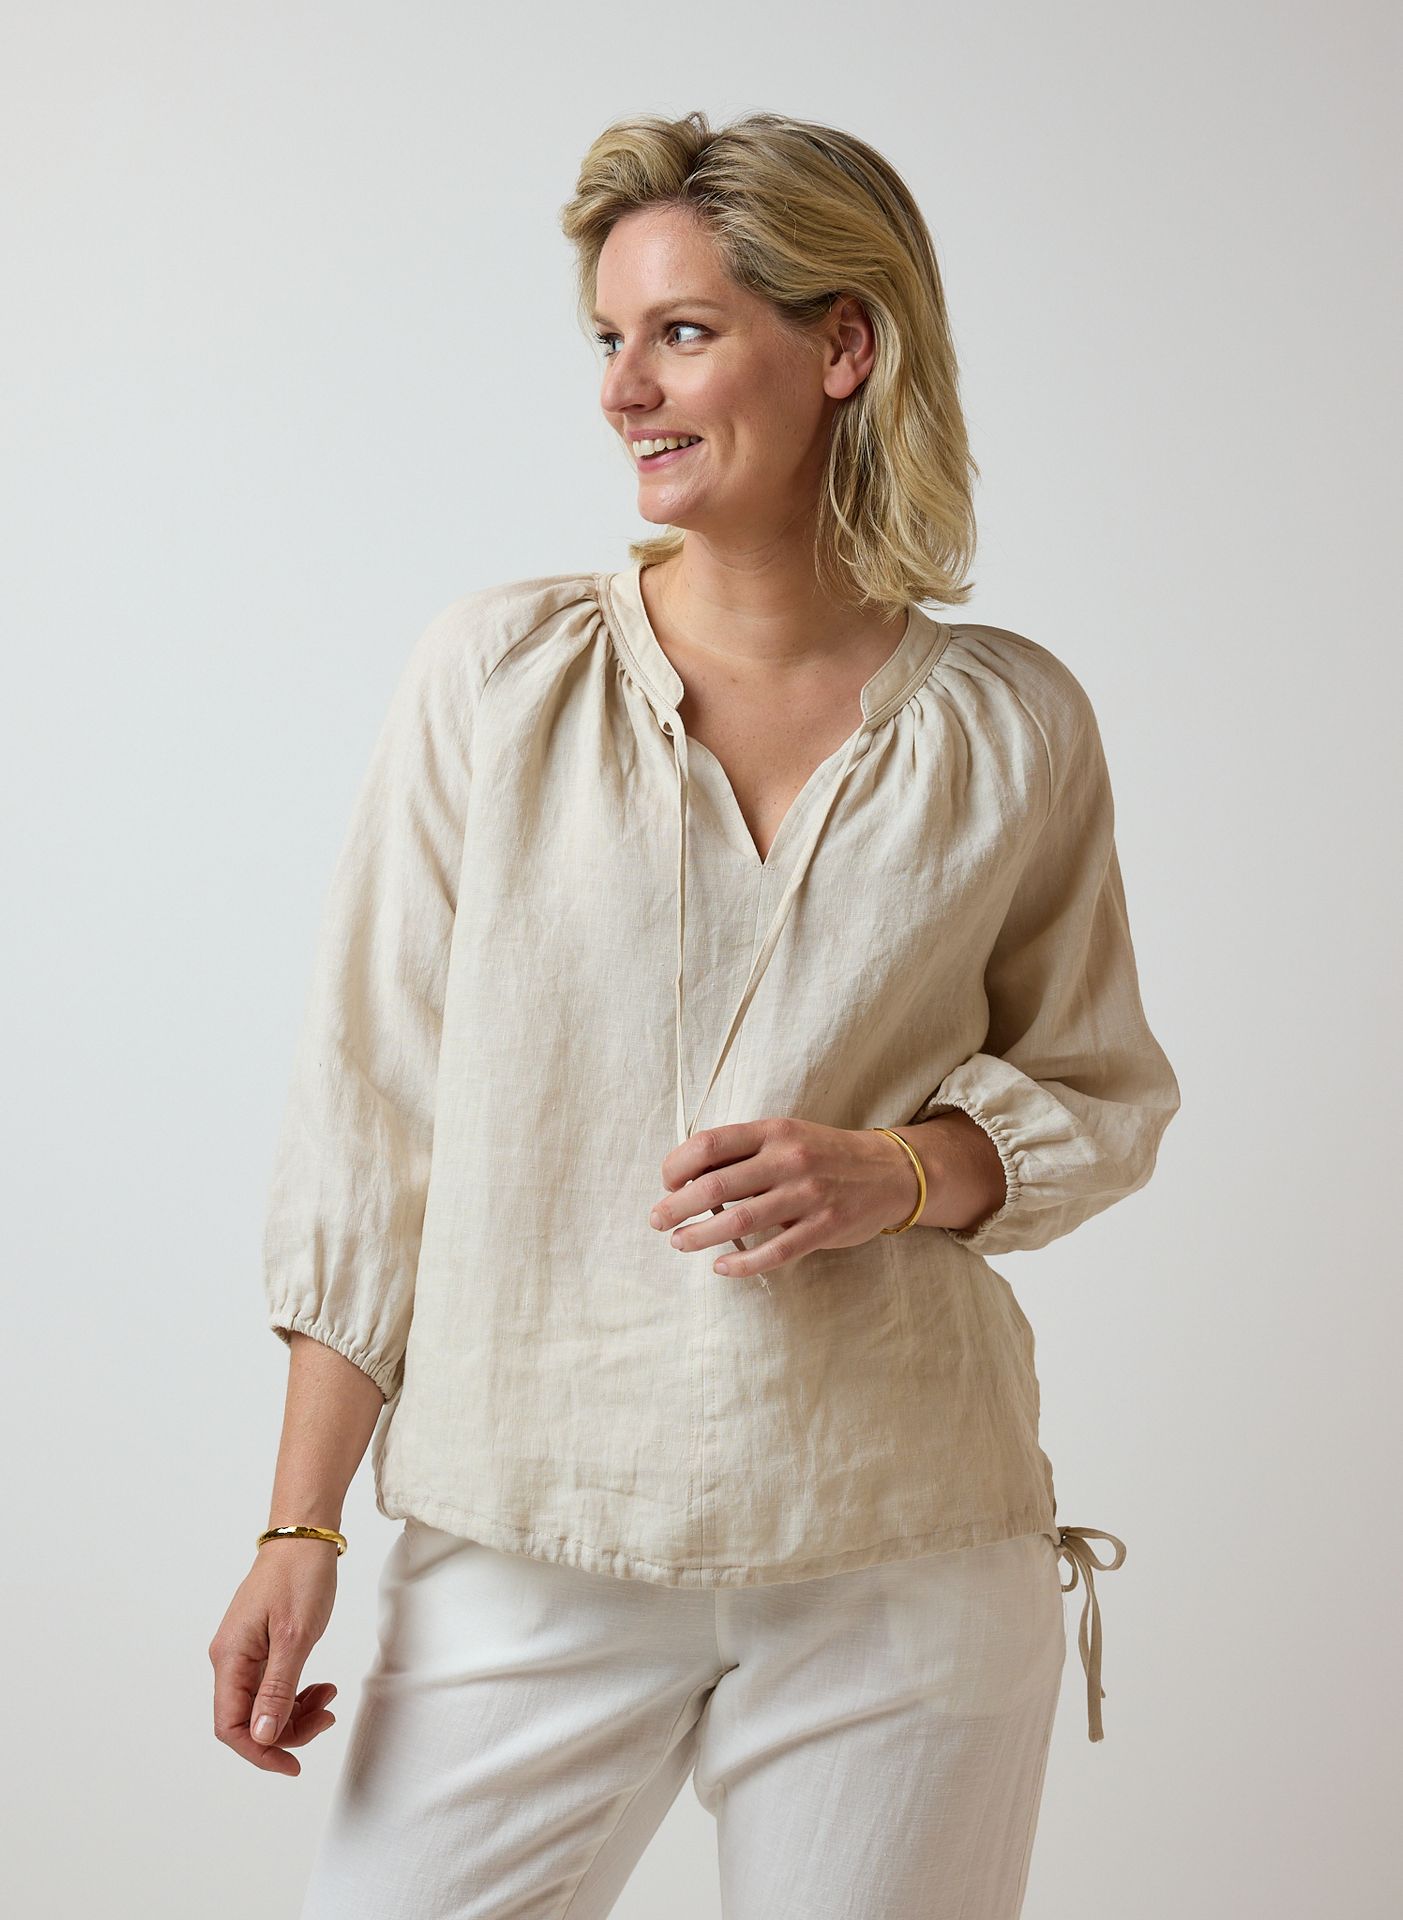 Norah Linnen blouse light sand 214498-111